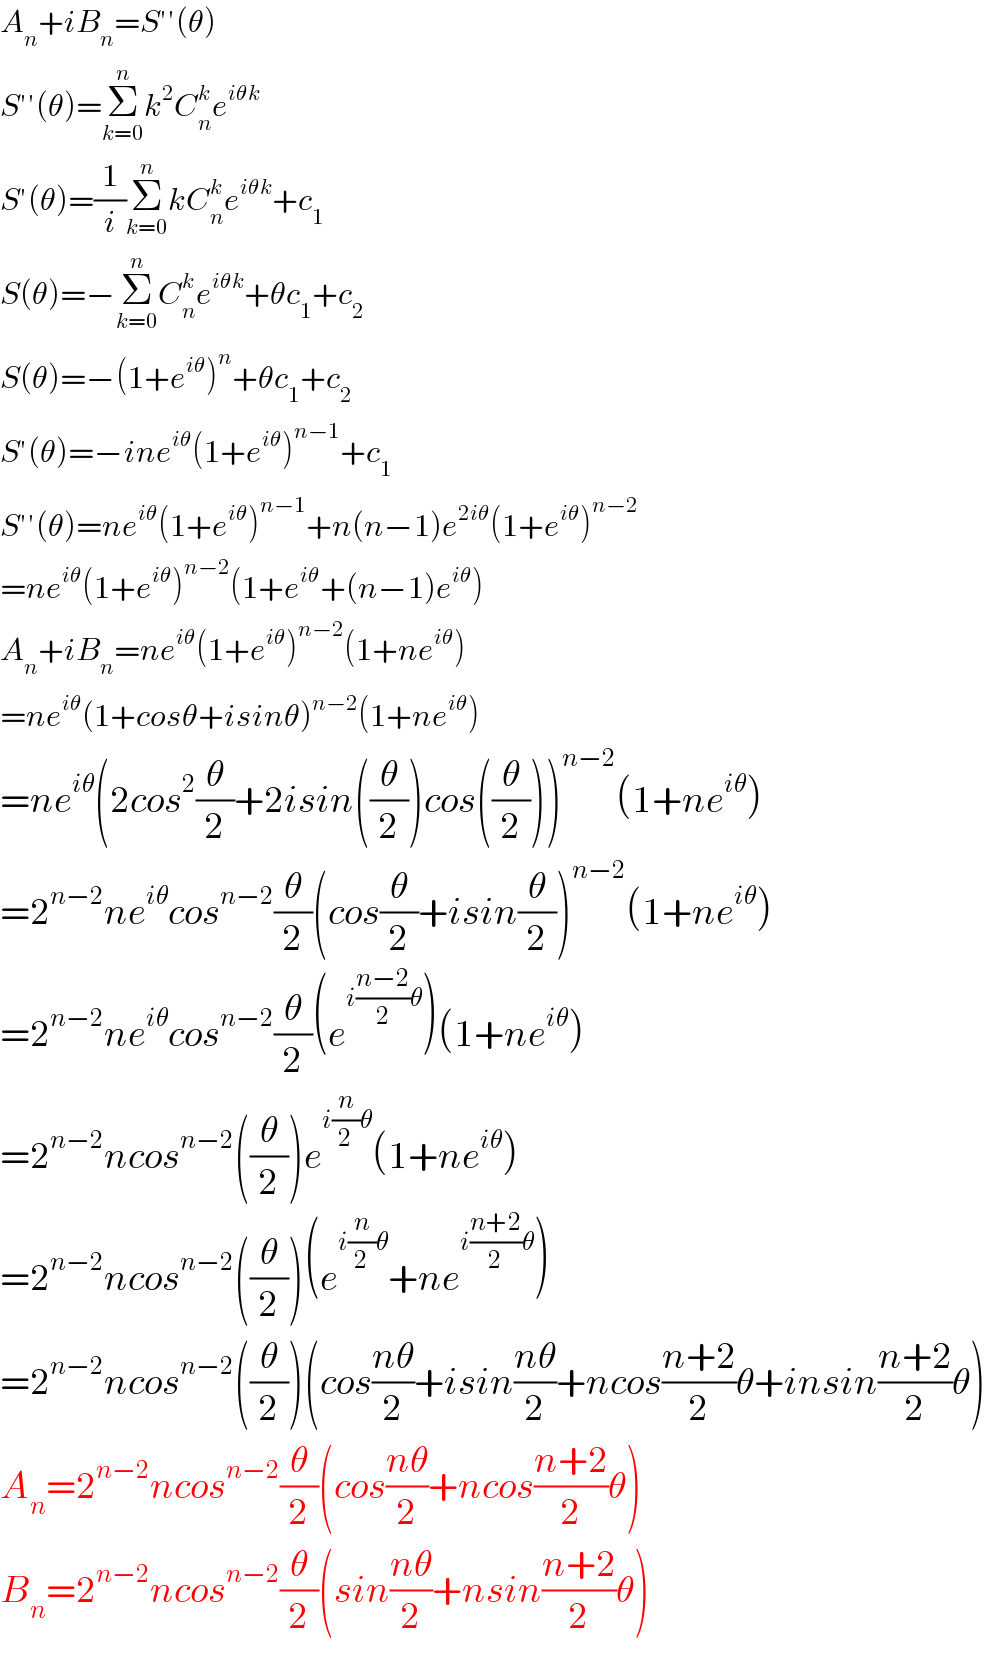 A_n +iB_n =S′′(θ)  S′′(θ)=Σ_(k=0) ^n k^2 C_n ^k e^(iθk)   S′(θ)=(1/i)Σ_(k=0) ^n kC_n ^k e^(iθk) +c_1   S(θ)=−Σ_(k=0) ^n C_n ^k e^(iθk) +θc_1 +c_2   S(θ)=−(1+e^(iθ) )^n +θc_1 +c_2   S′(θ)=−ine^(iθ) (1+e^(iθ) )^(n−1) +c_1   S′′(θ)=ne^(iθ) (1+e^(iθ) )^(n−1) +n(n−1)e^(2iθ) (1+e^(iθ) )^(n−2)   =ne^(iθ) (1+e^(iθ) )^(n−2) (1+e^(iθ) +(n−1)e^(iθ) )  A_n +iB_n =ne^(iθ) (1+e^(iθ) )^(n−2) (1+ne^(iθ) )  =ne^(iθ) (1+cosθ+isinθ)^(n−2) (1+ne^(iθ) )  =ne^(iθ) (2cos^2 (θ/2)+2isin((θ/2))cos((θ/2)))^(n−2) (1+ne^(iθ) )  =2^(n−2) ne^(iθ) cos^(n−2) (θ/2)(cos(θ/2)+isin(θ/2))^(n−2) (1+ne^(iθ) )  =2^(n−2) ne^(iθ) cos^(n−2) (θ/2)(e^(i((n−2)/2)θ) )(1+ne^(iθ) )  =2^(n−2) ncos^(n−2) ((θ/2))e^(i(n/2)θ) (1+ne^(iθ) )  =2^(n−2) ncos^(n−2) ((θ/2))(e^(i(n/2)θ) +ne^(i((n+2)/2)θ) )  =2^(n−2) ncos^(n−2) ((θ/2))(cos((nθ)/2)+isin((nθ)/2)+ncos((n+2)/2)θ+insin((n+2)/2)θ)  A_n =2^(n−2) ncos^(n−2) (θ/2)(cos((nθ)/2)+ncos((n+2)/2)θ)  B_n =2^(n−2) ncos^(n−2) (θ/2)(sin((nθ)/2)+nsin((n+2)/2)θ)  